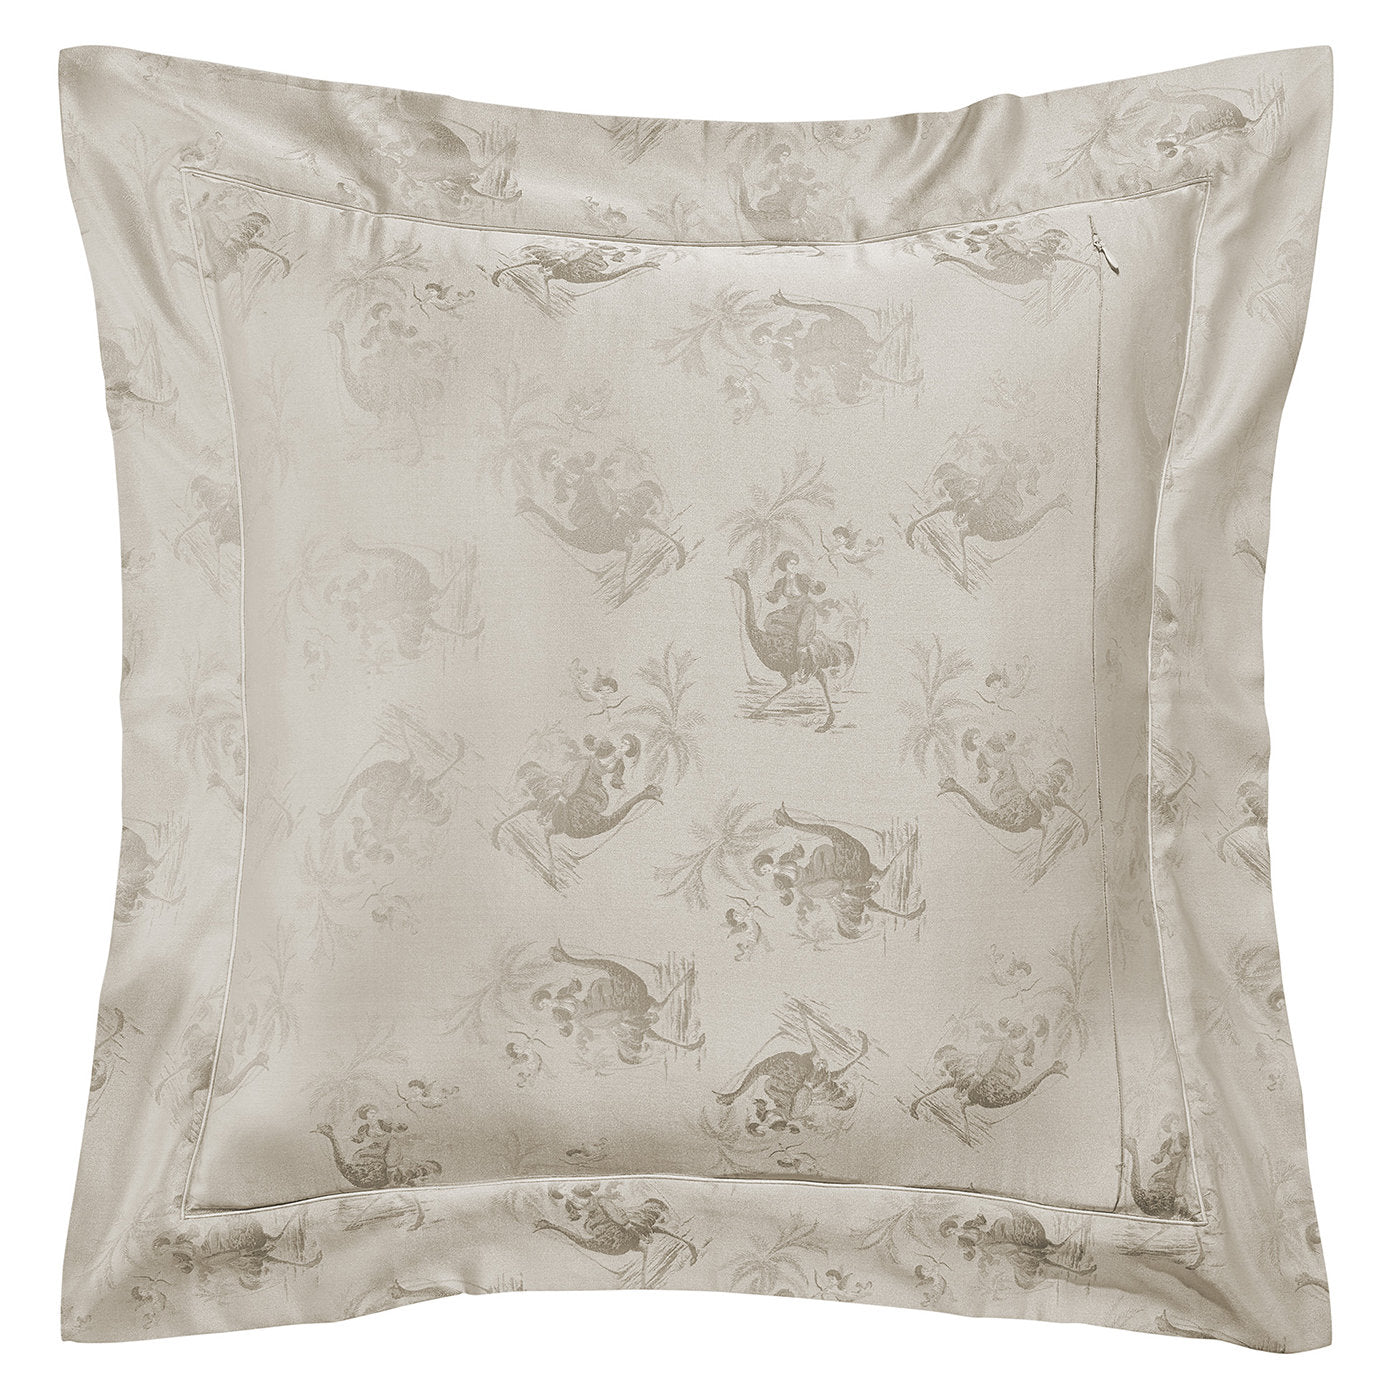 Maharaja Teal Pillow Case  - Alternative view 1